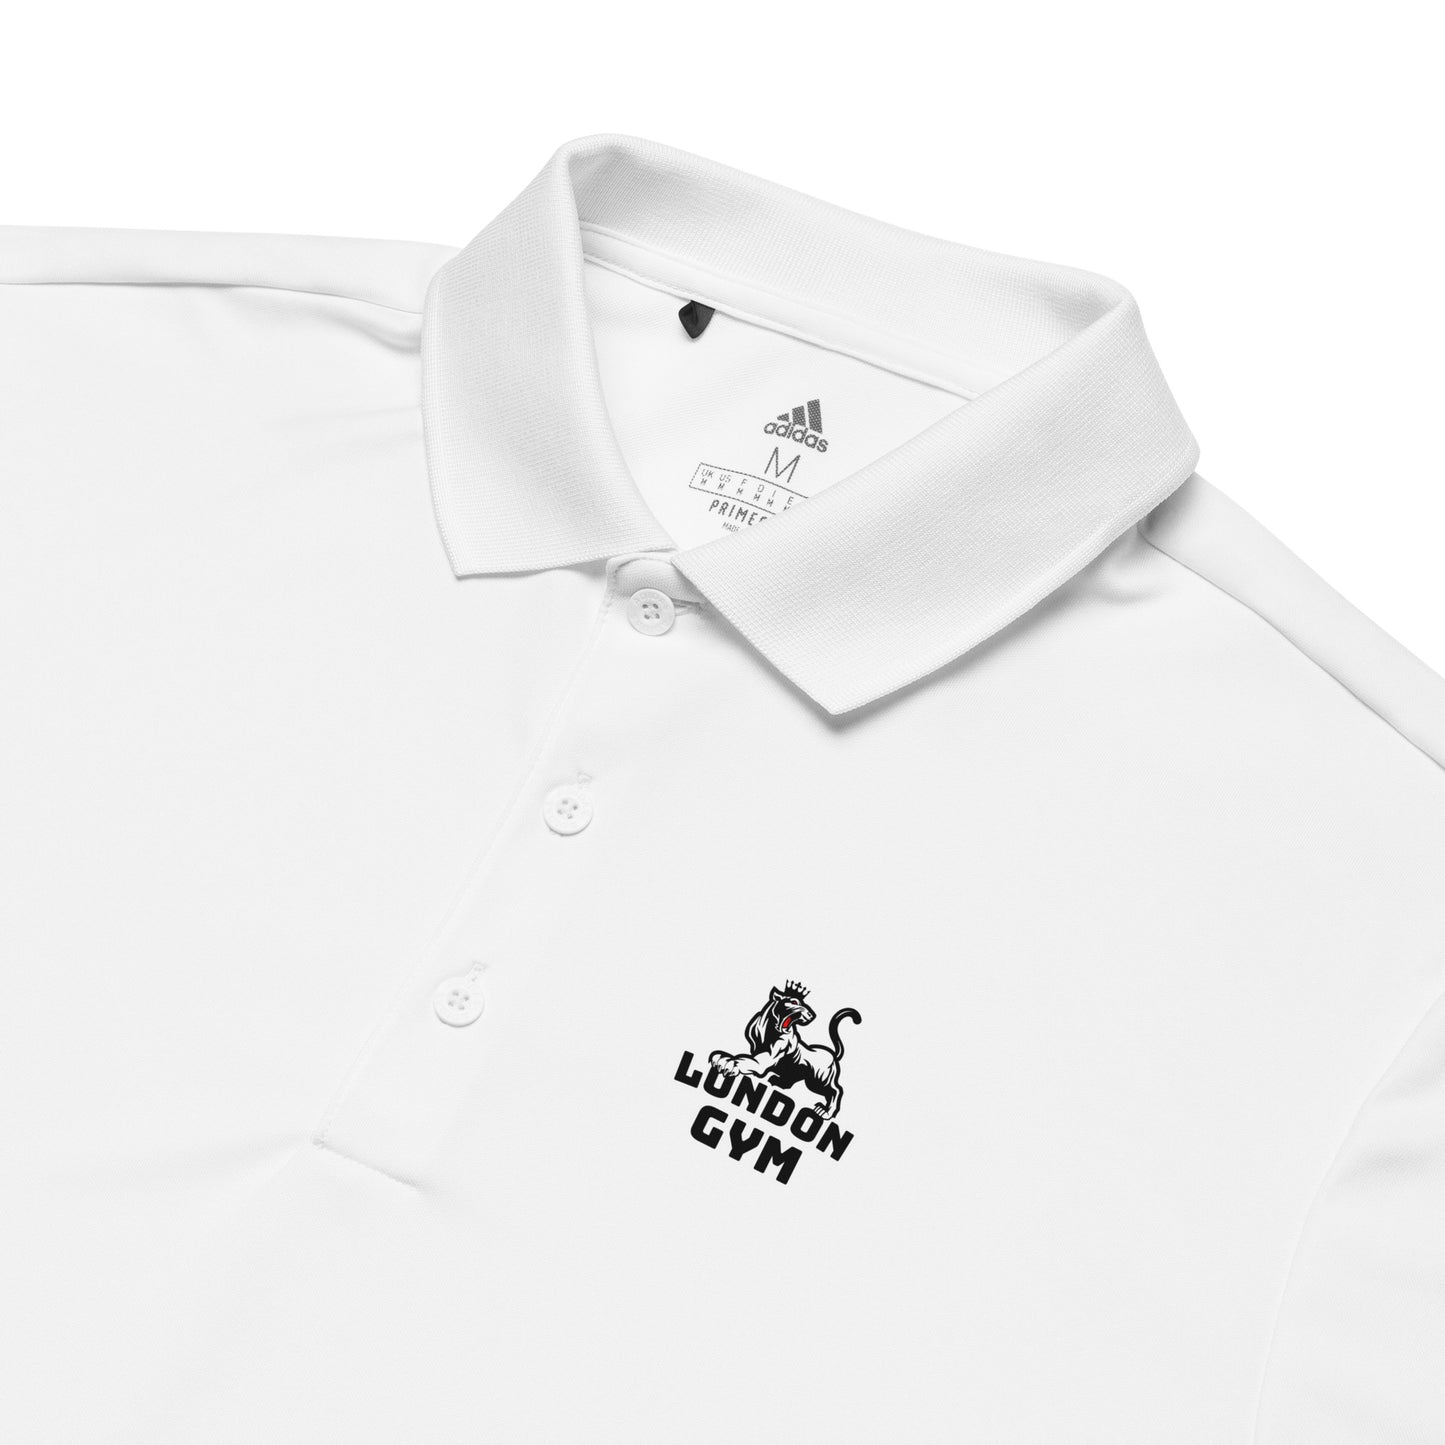 Adidas Premium Polo Men Shirt Black and White